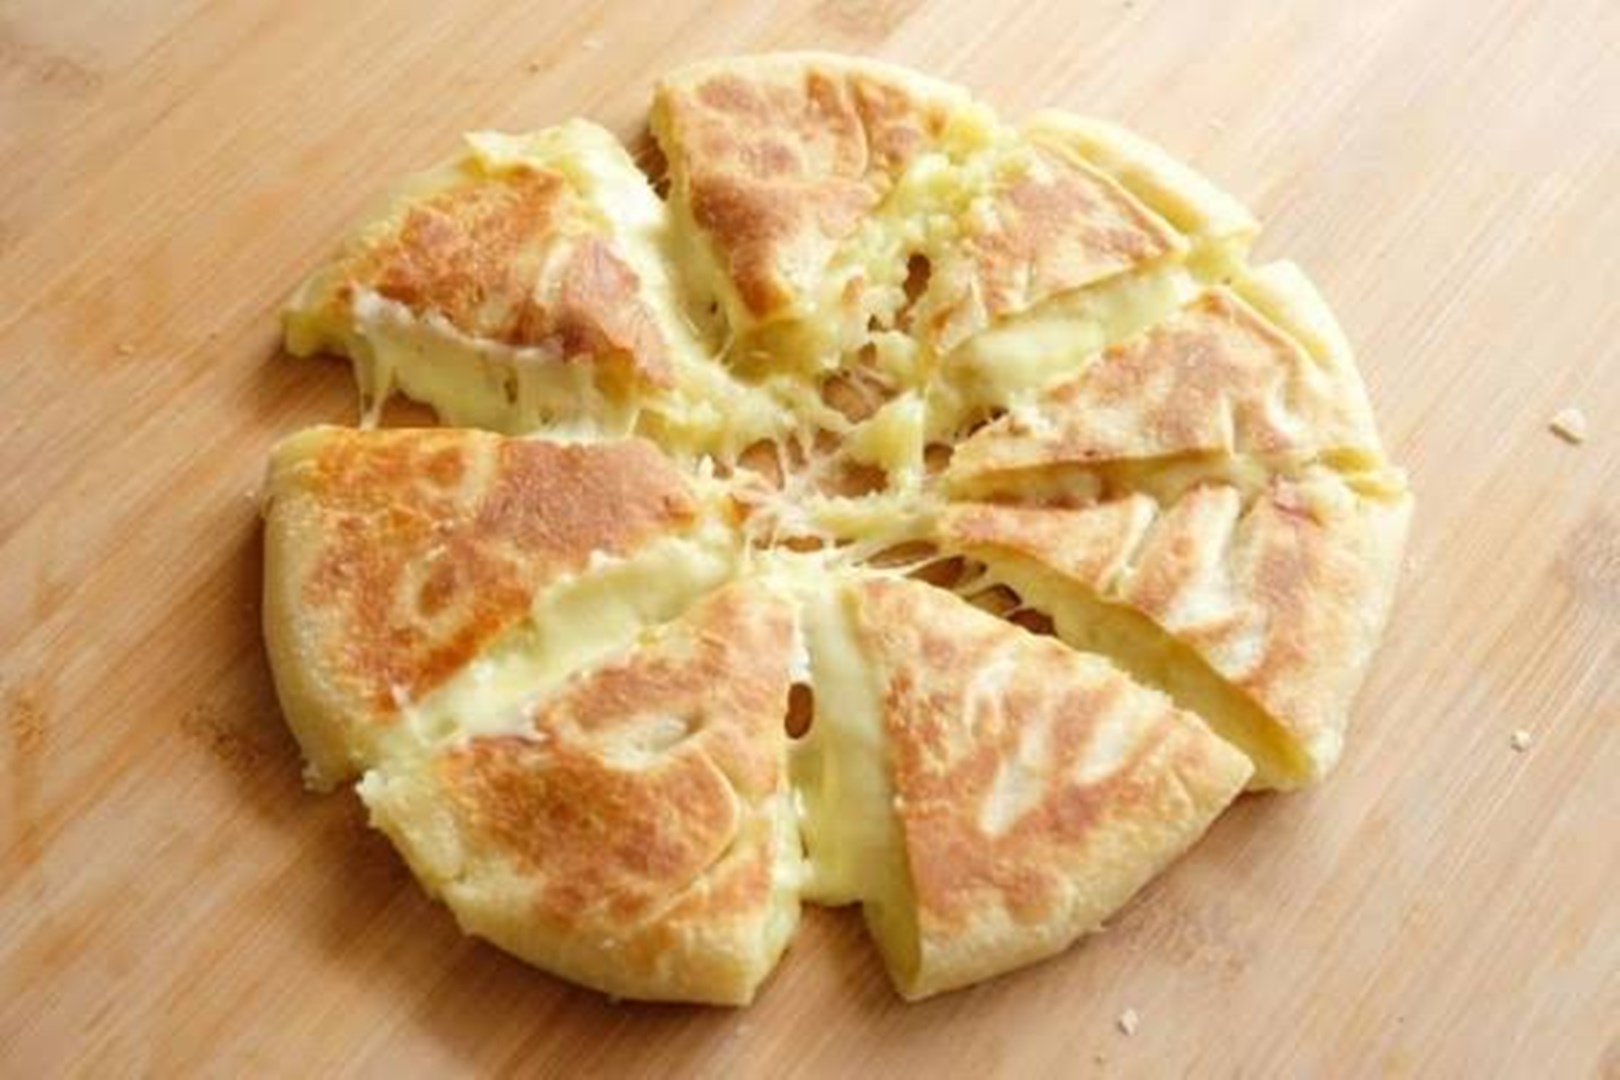 Resep Potato Cheese Bread Mudah ala Korea, Gurih dan Lembut